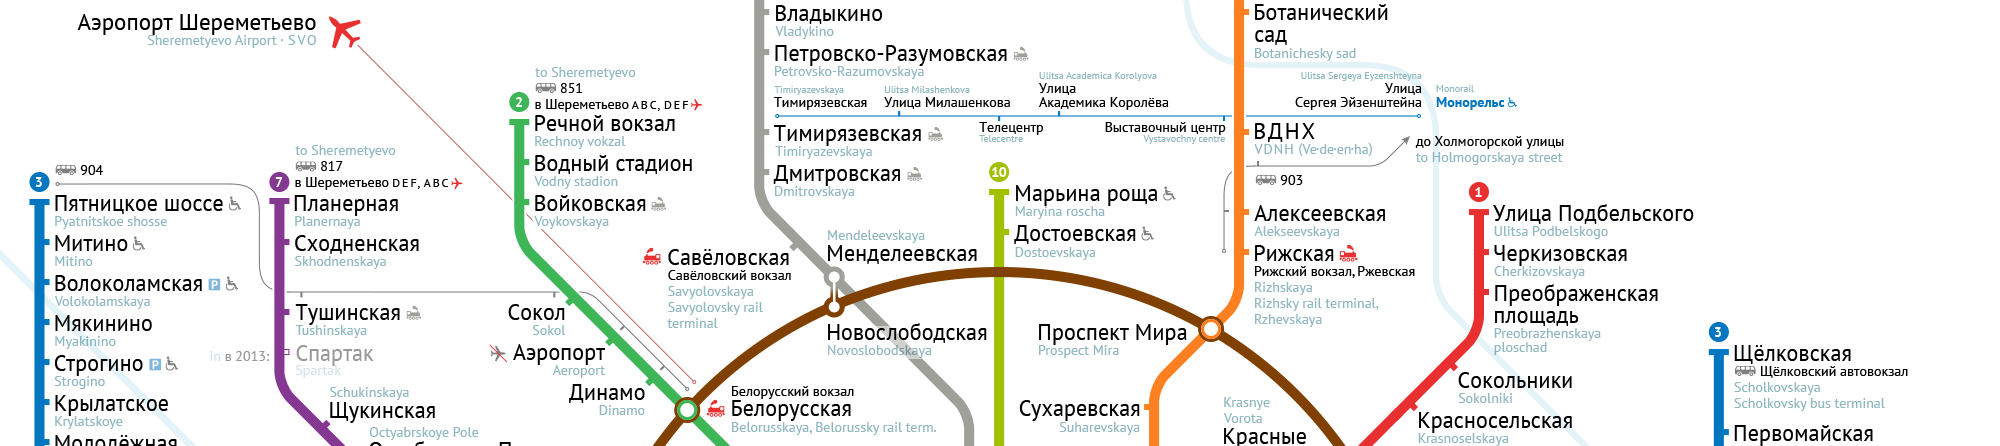 Шереметьево киевский вокзал: как добраться, аэроэкспресс, метро, автобус, маршрутка, электричка, такси